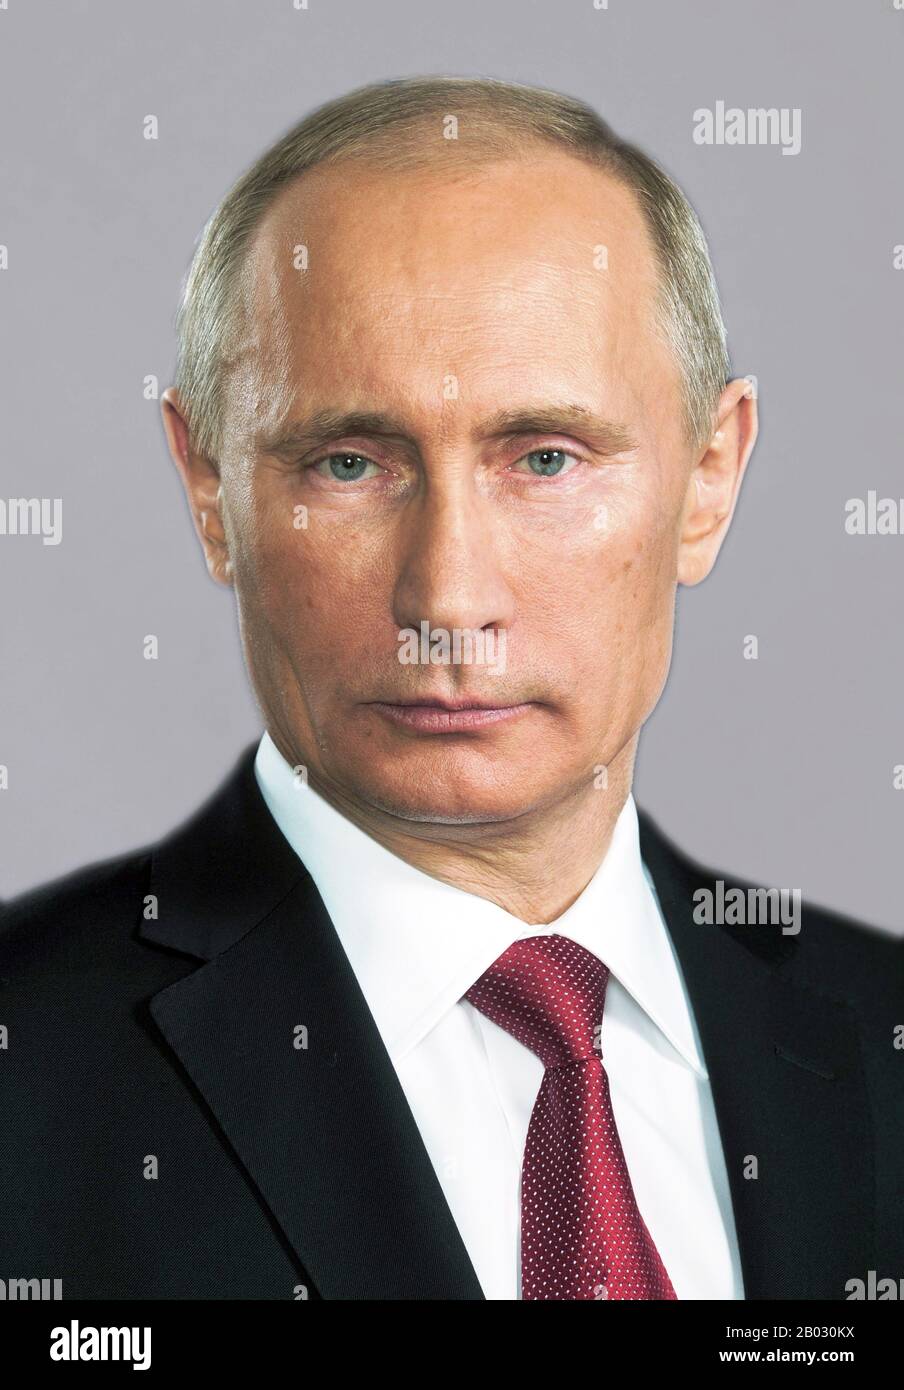 Vladimir Vladimirovich Poutine (né le 7 octobre 1952) est le président de la Russie depuis le 7 mai 2012, succédant à Dmitry Medvedev. Poutine a auparavant été président de 2000 à 2008, et Premier ministre de la Russie de 1999 à 2000 et de 2008 à 2012. Au cours de son dernier mandat de premier ministre, il a également été président de la Russie unie, le parti au pouvoir. Banque D'Images